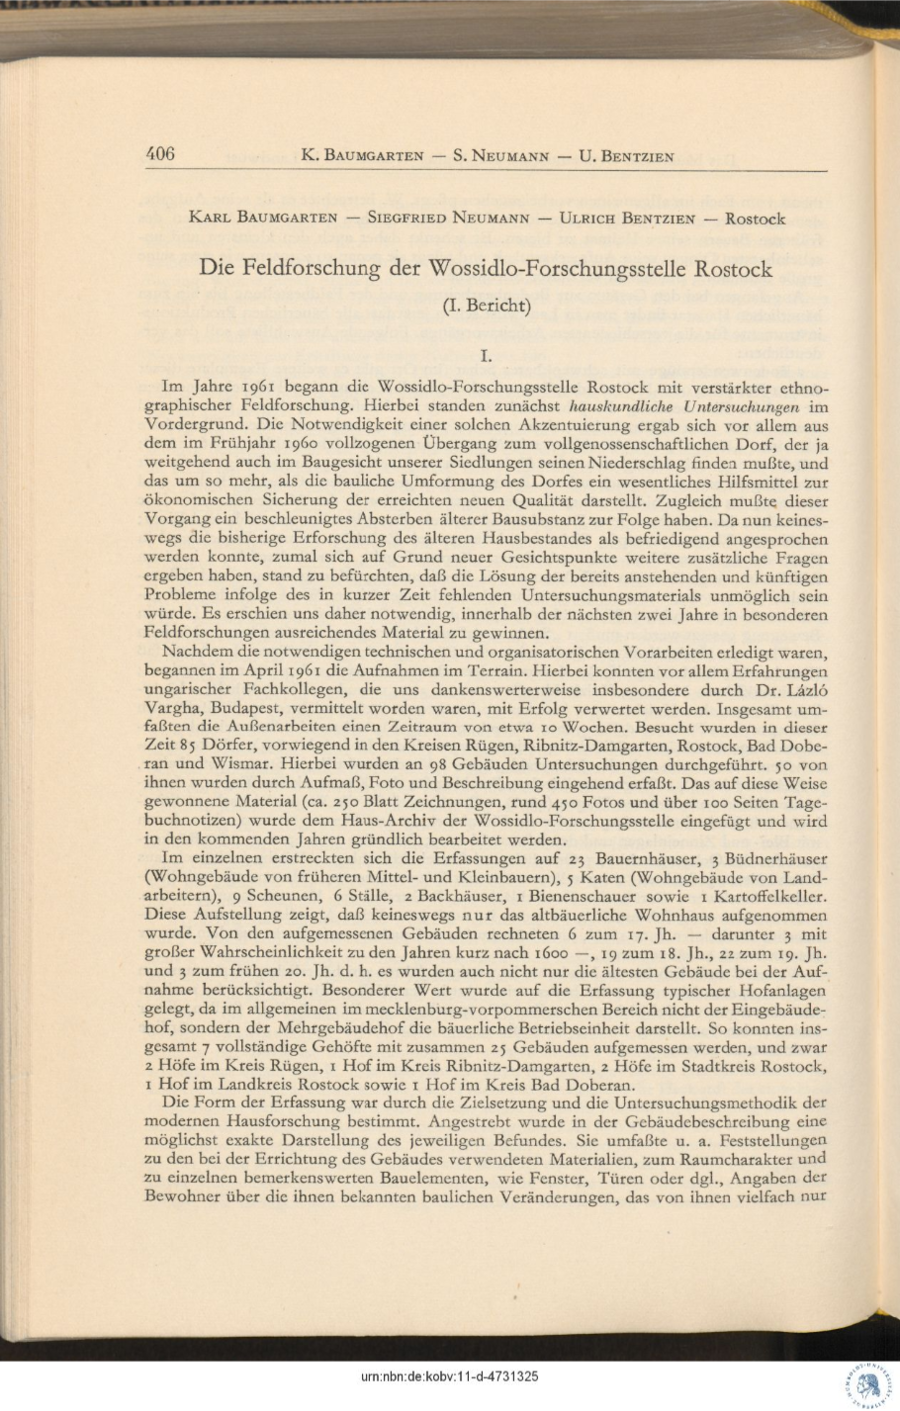 Baumgarten 1962 Feldforschung Wossidlo Forschungsstelle 406